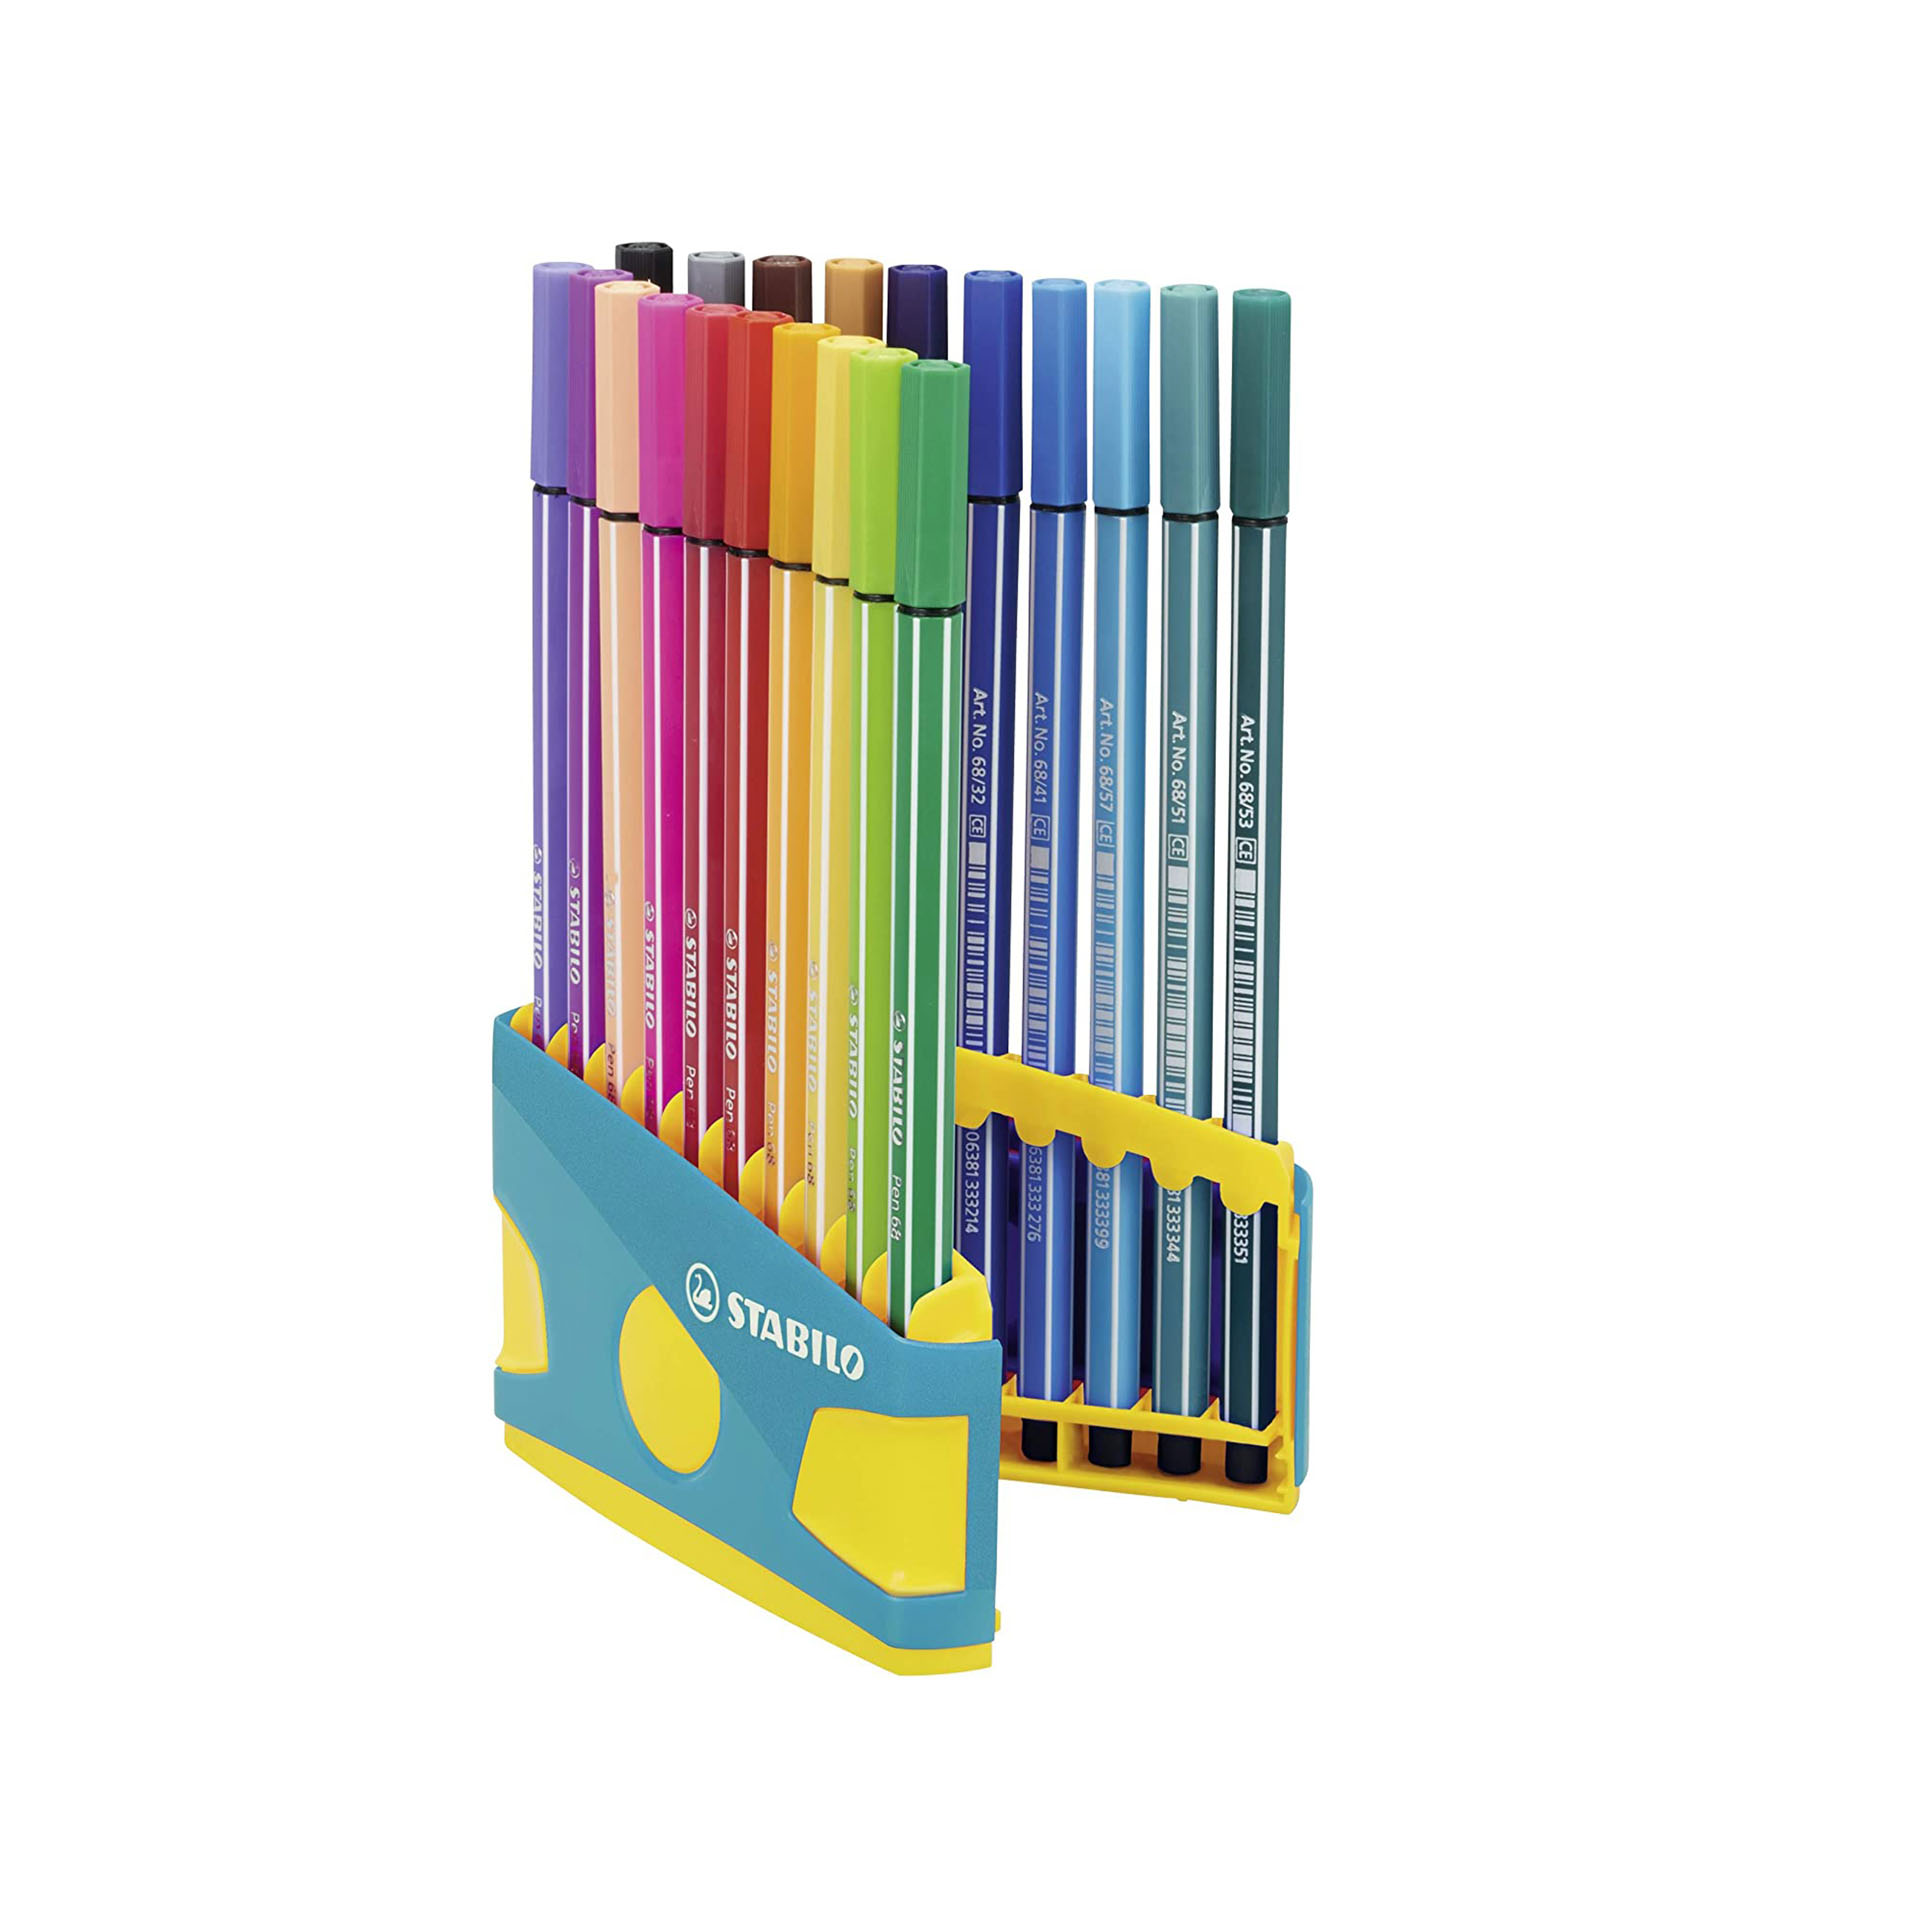 STABILO Pen 68 Colorparade in Turchese - Astuccio da 20 - Colori assortiti, , large